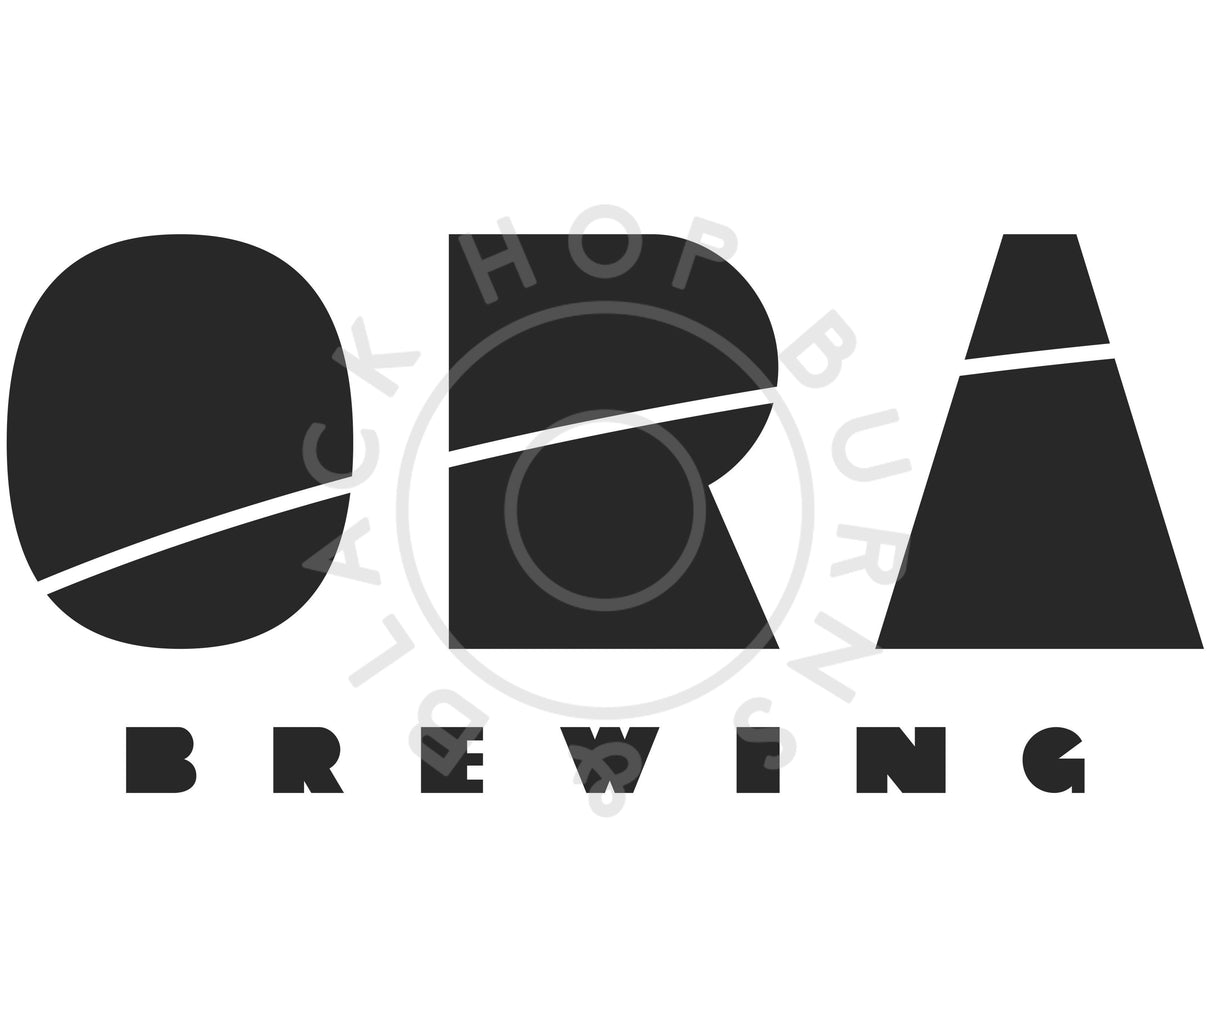 ORA Brewing Limoncello IPA 6% (440ml can)-Hop Burns & Black